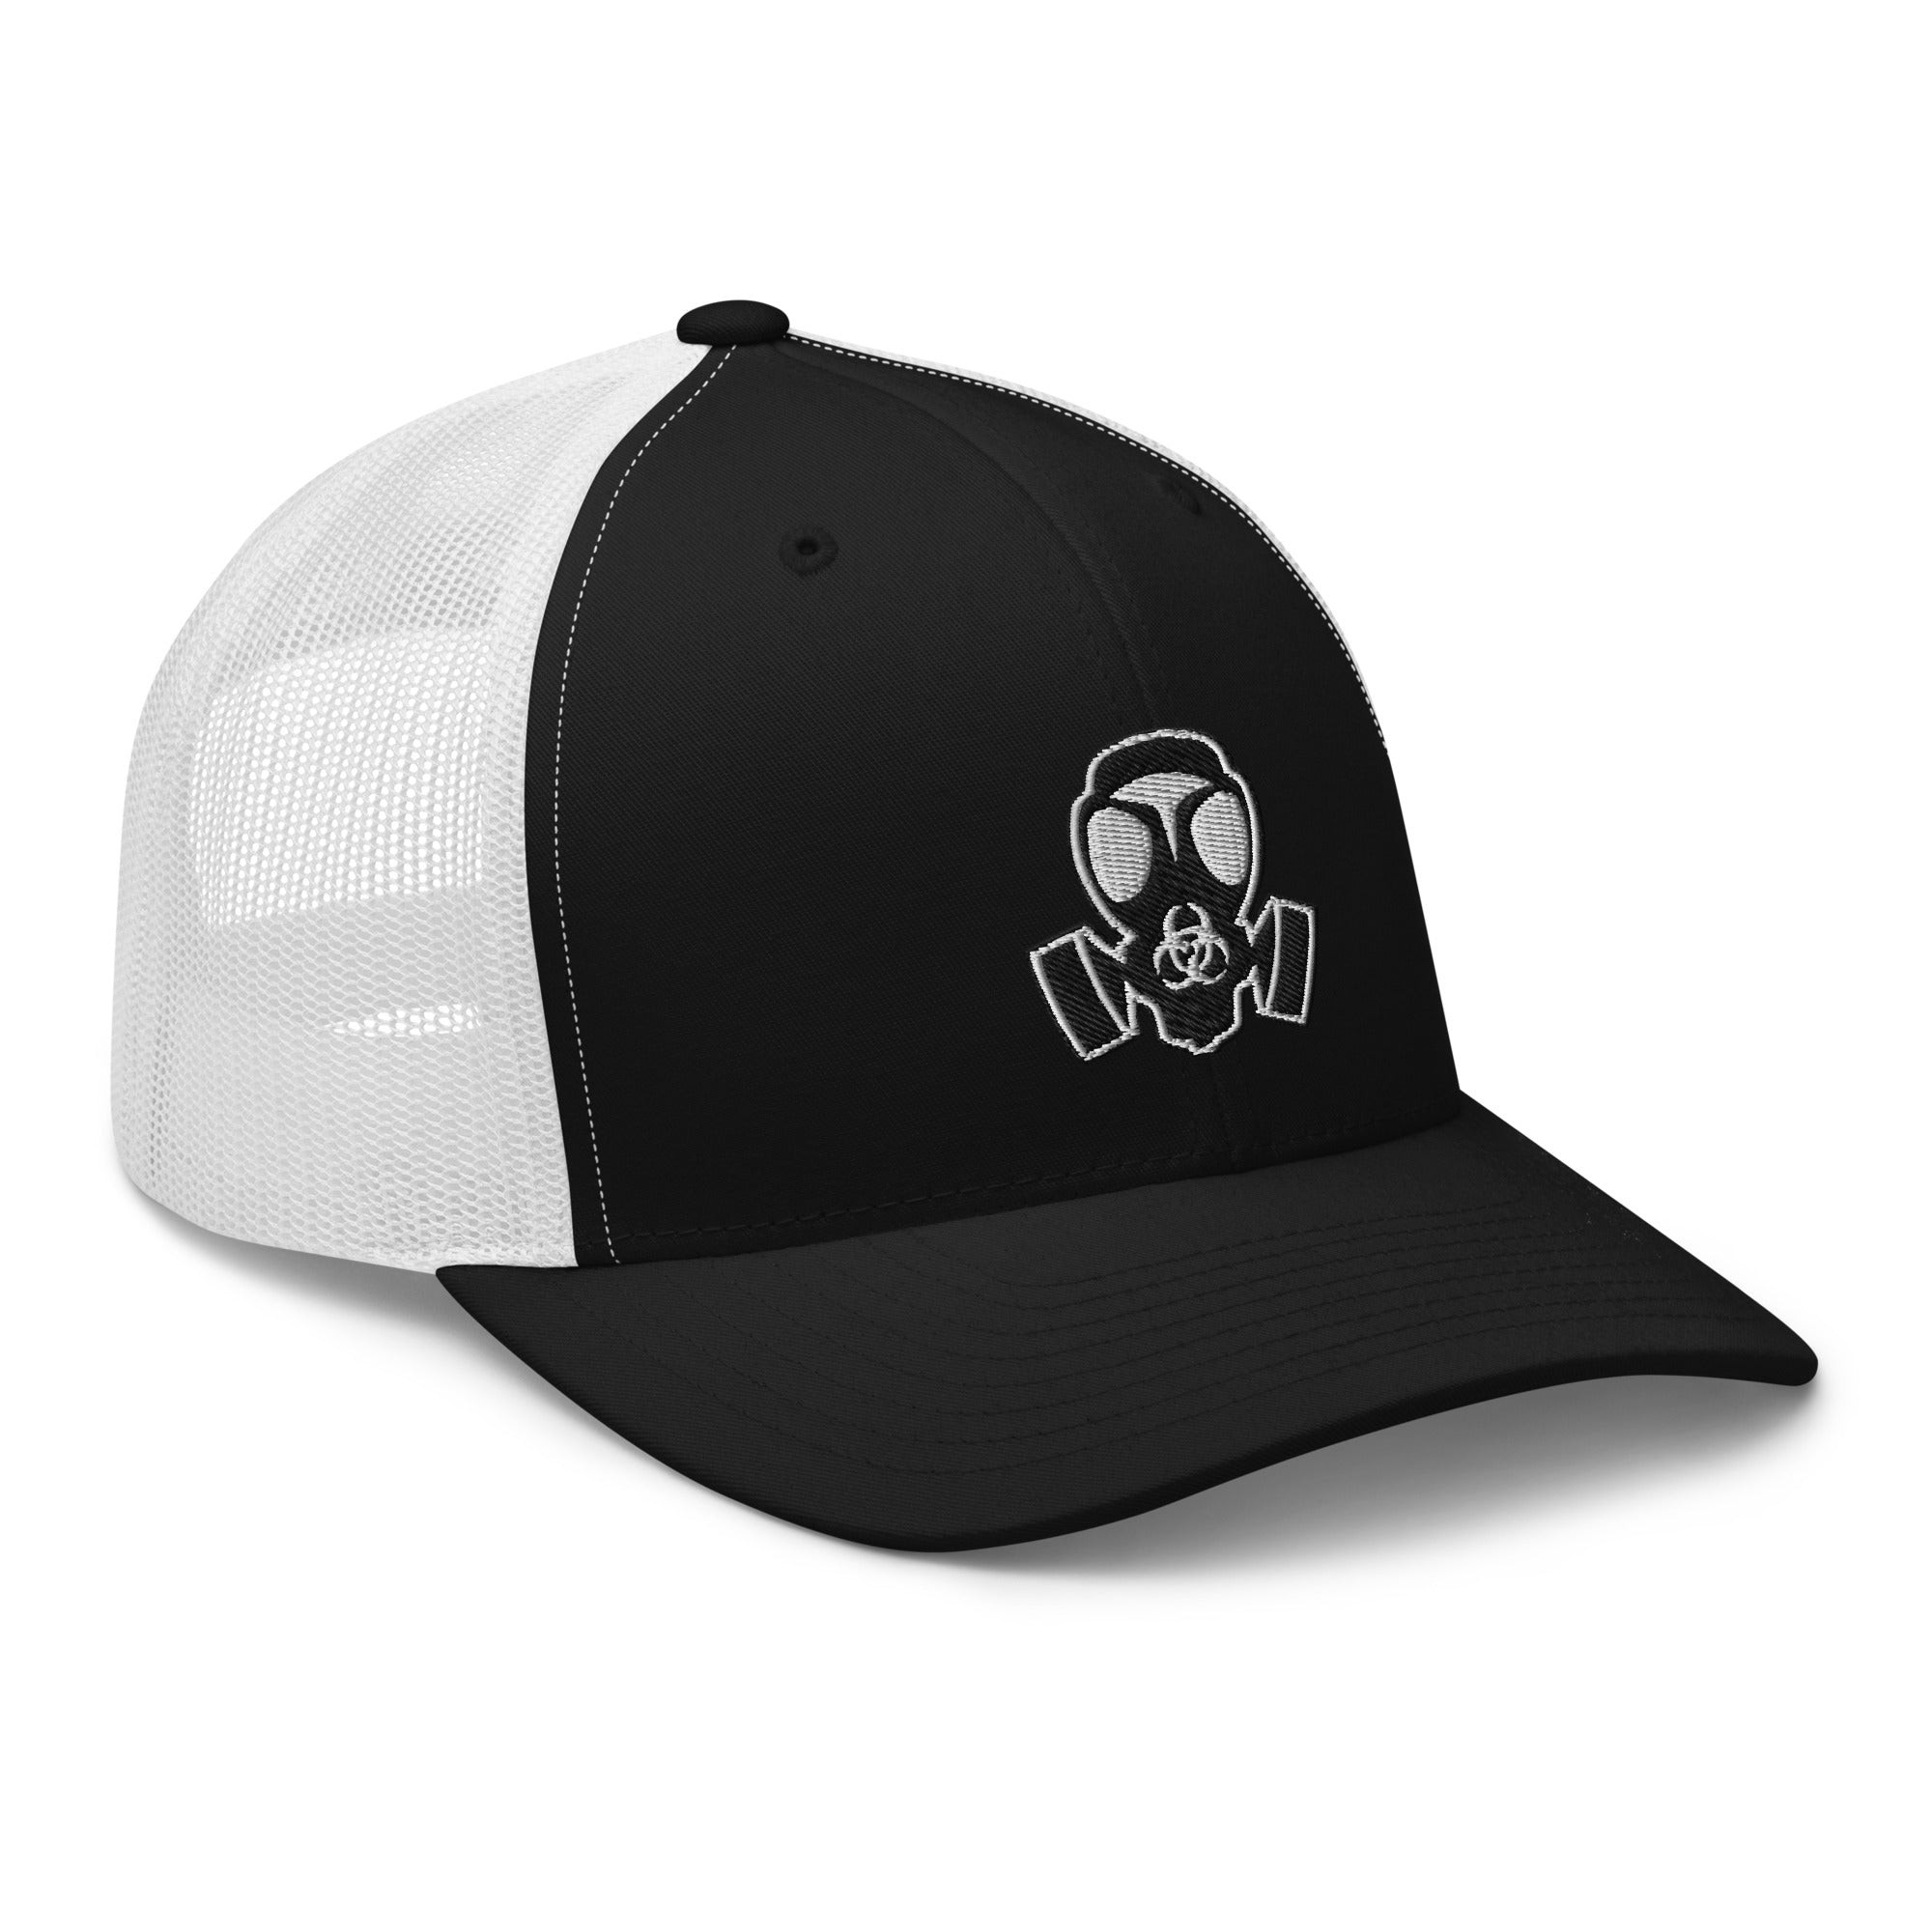 White Bio Hazard Gas Mask Embroidered Retro Trucker Cap Snapback Hat